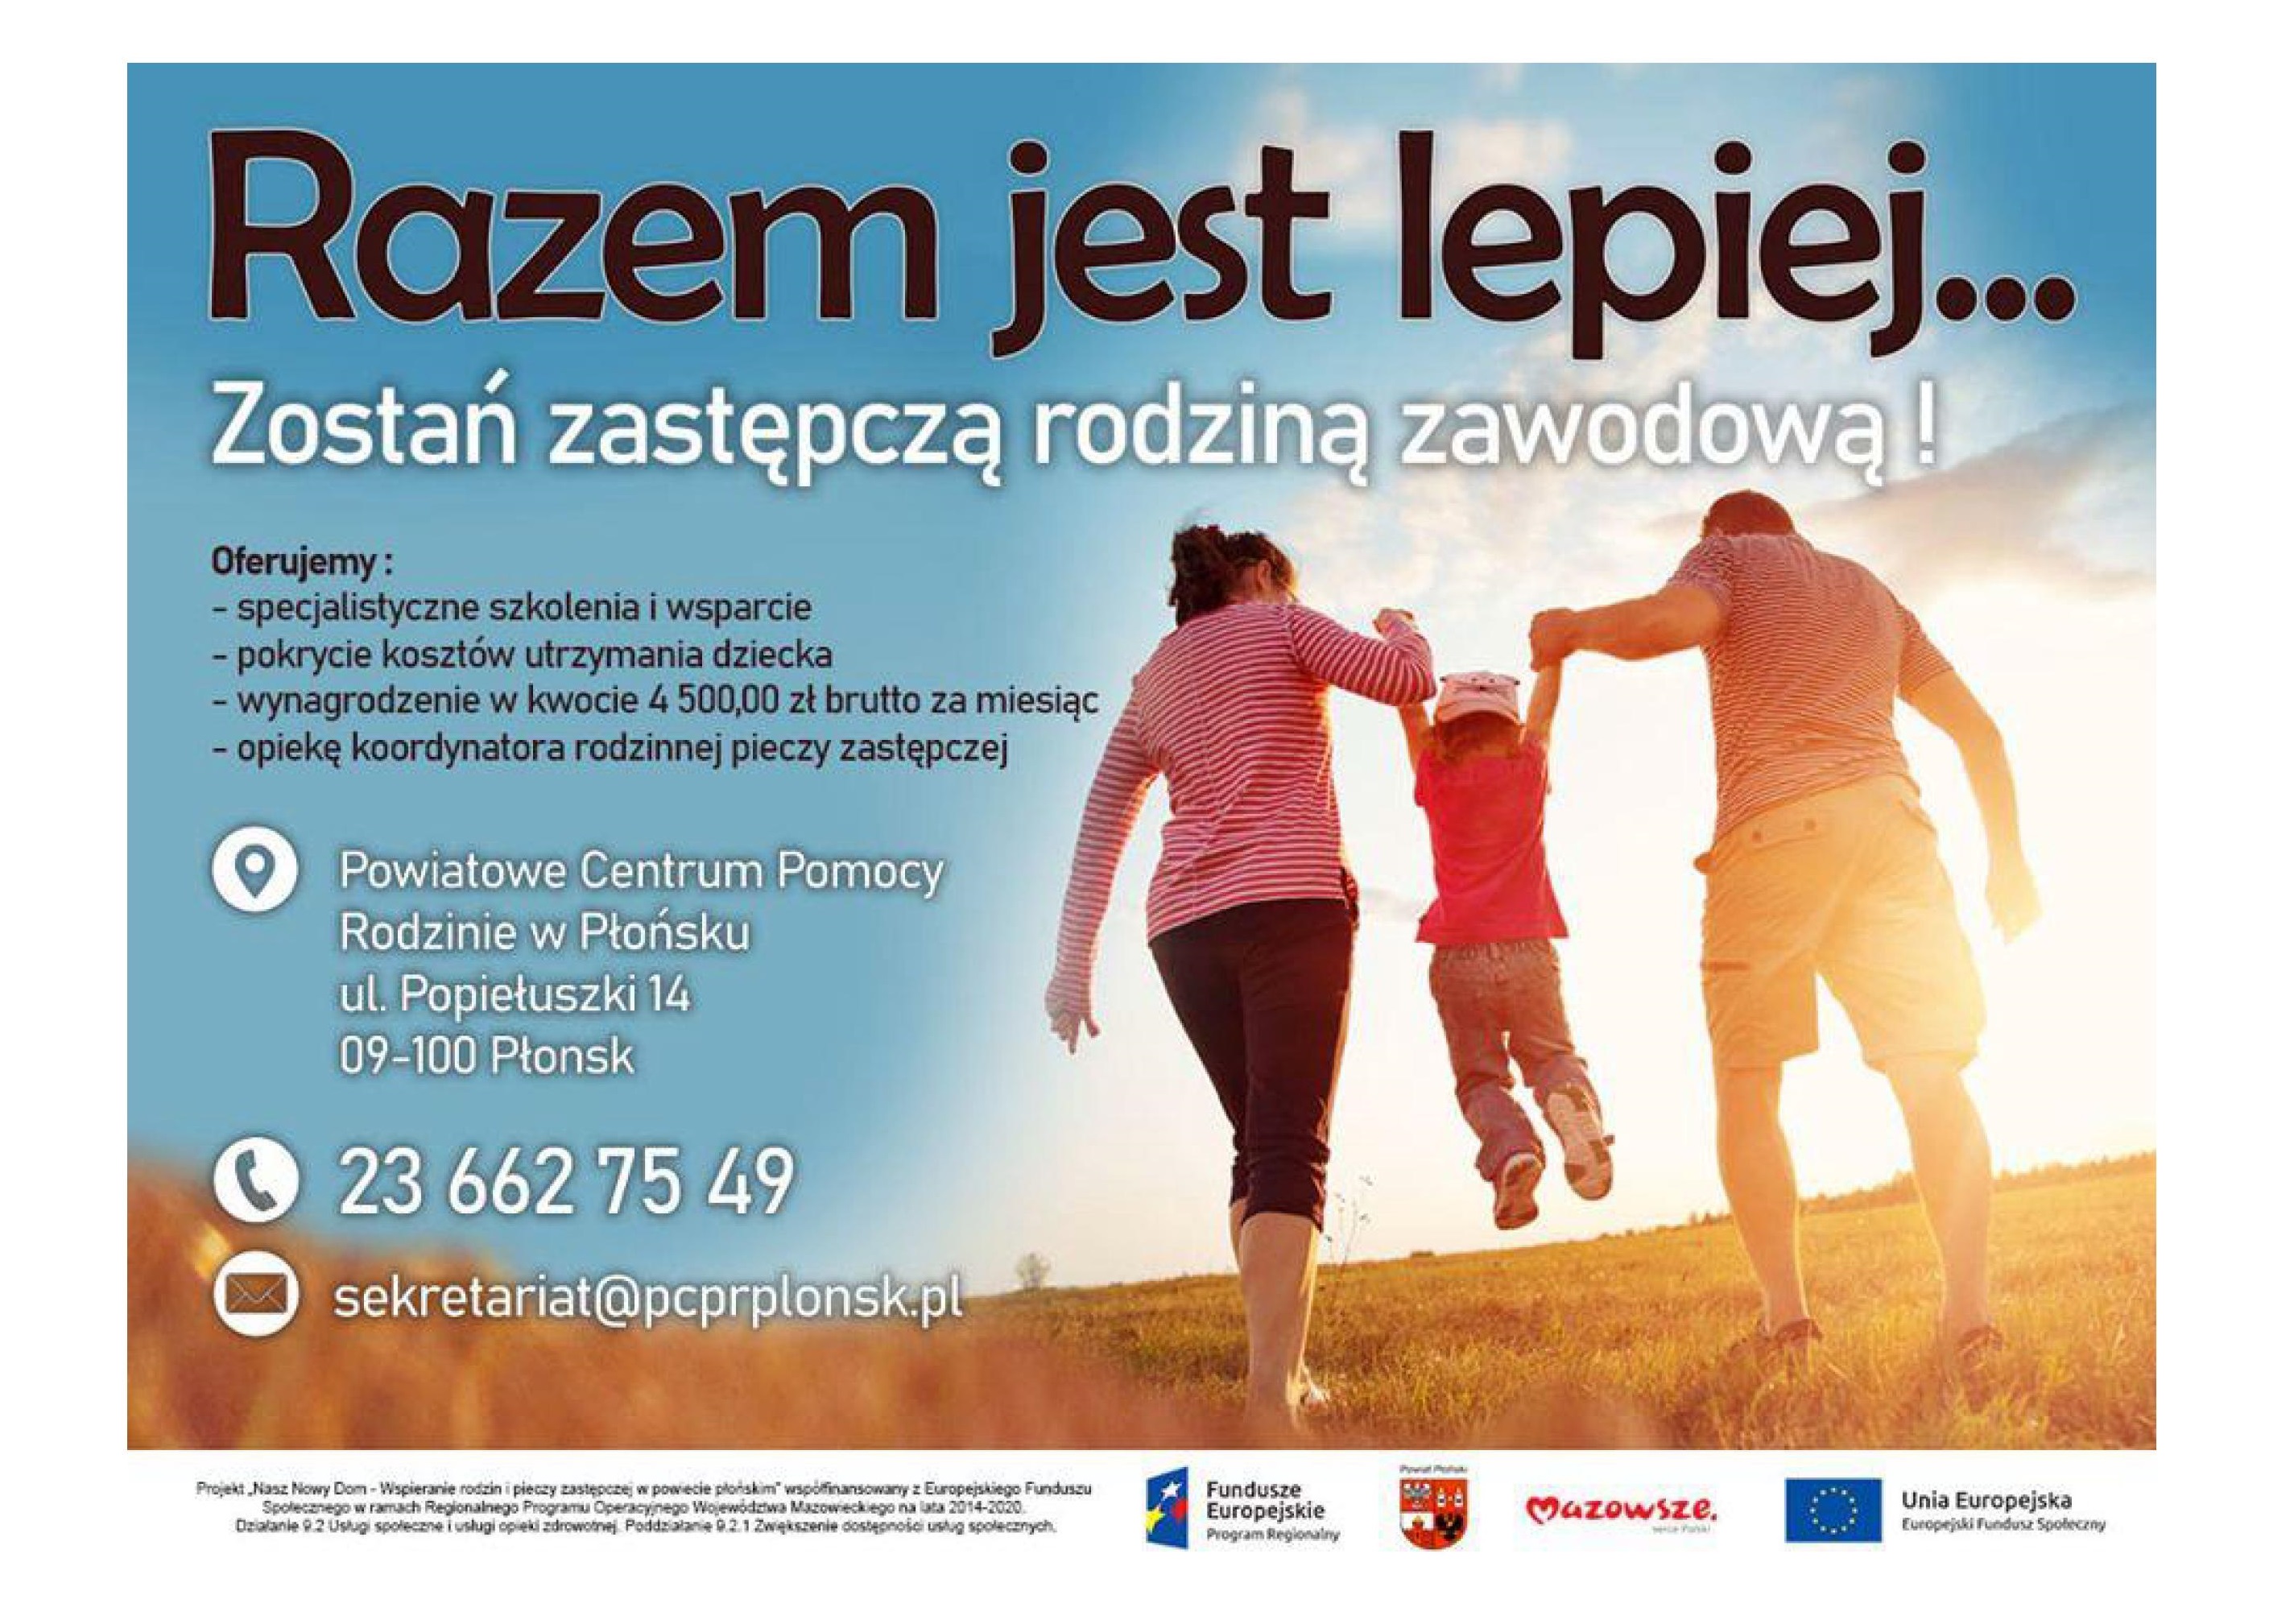 Ilustracja do artykułu Zawodowa rodzina zastepcza podczas spaceru oraz informacje dotyczące PCPR w Płońsku._01.jpg